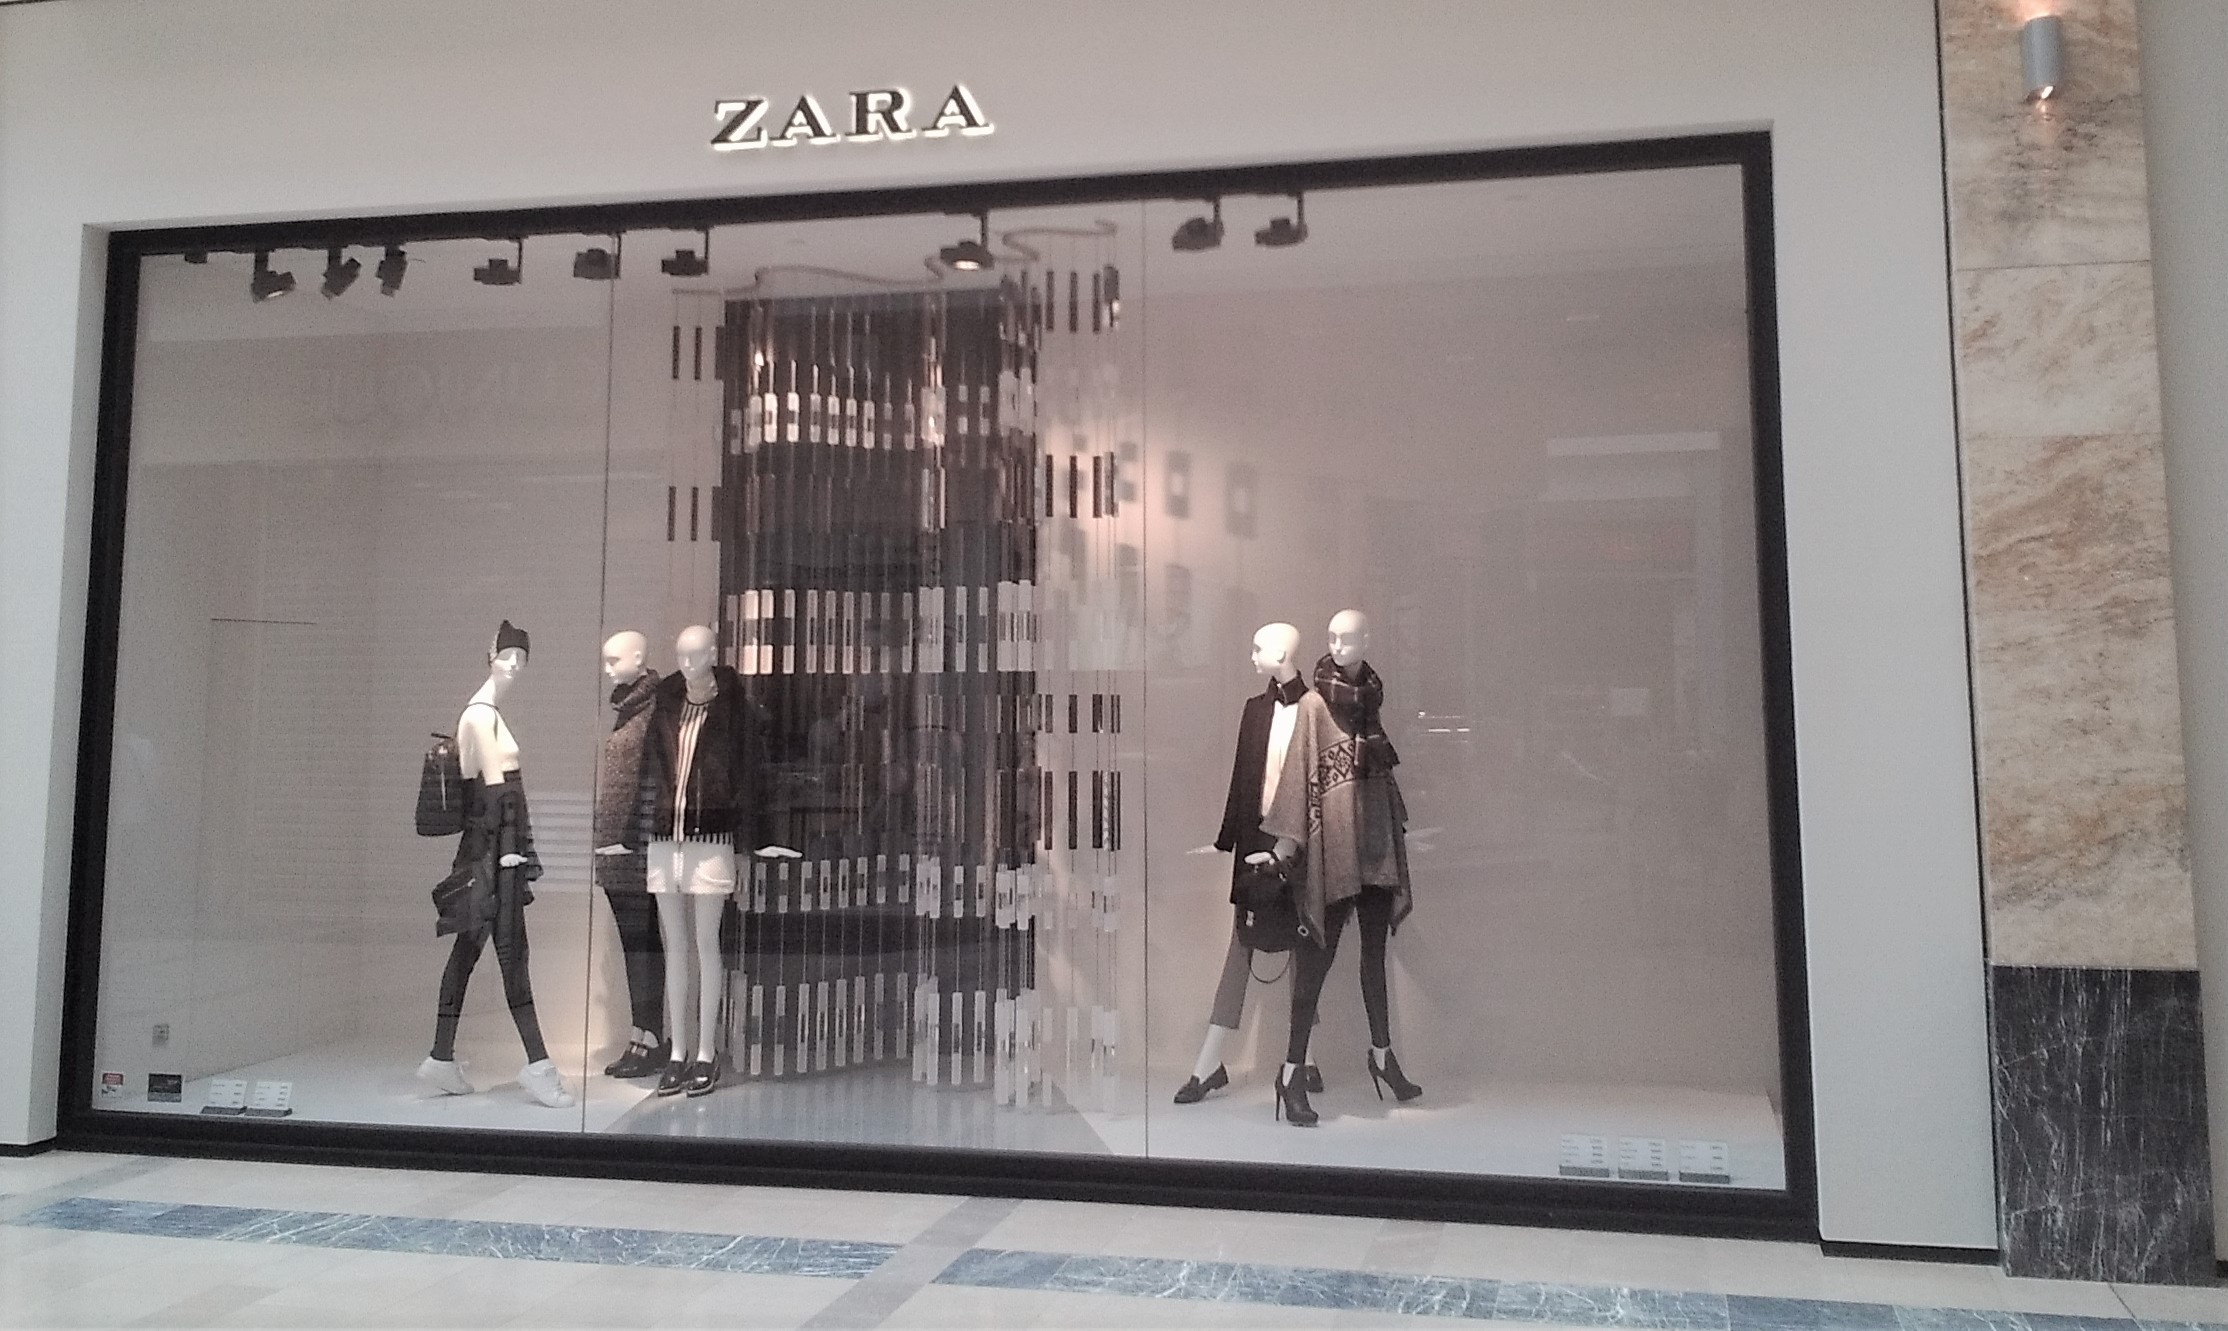 02_ZARA_Arena_facade